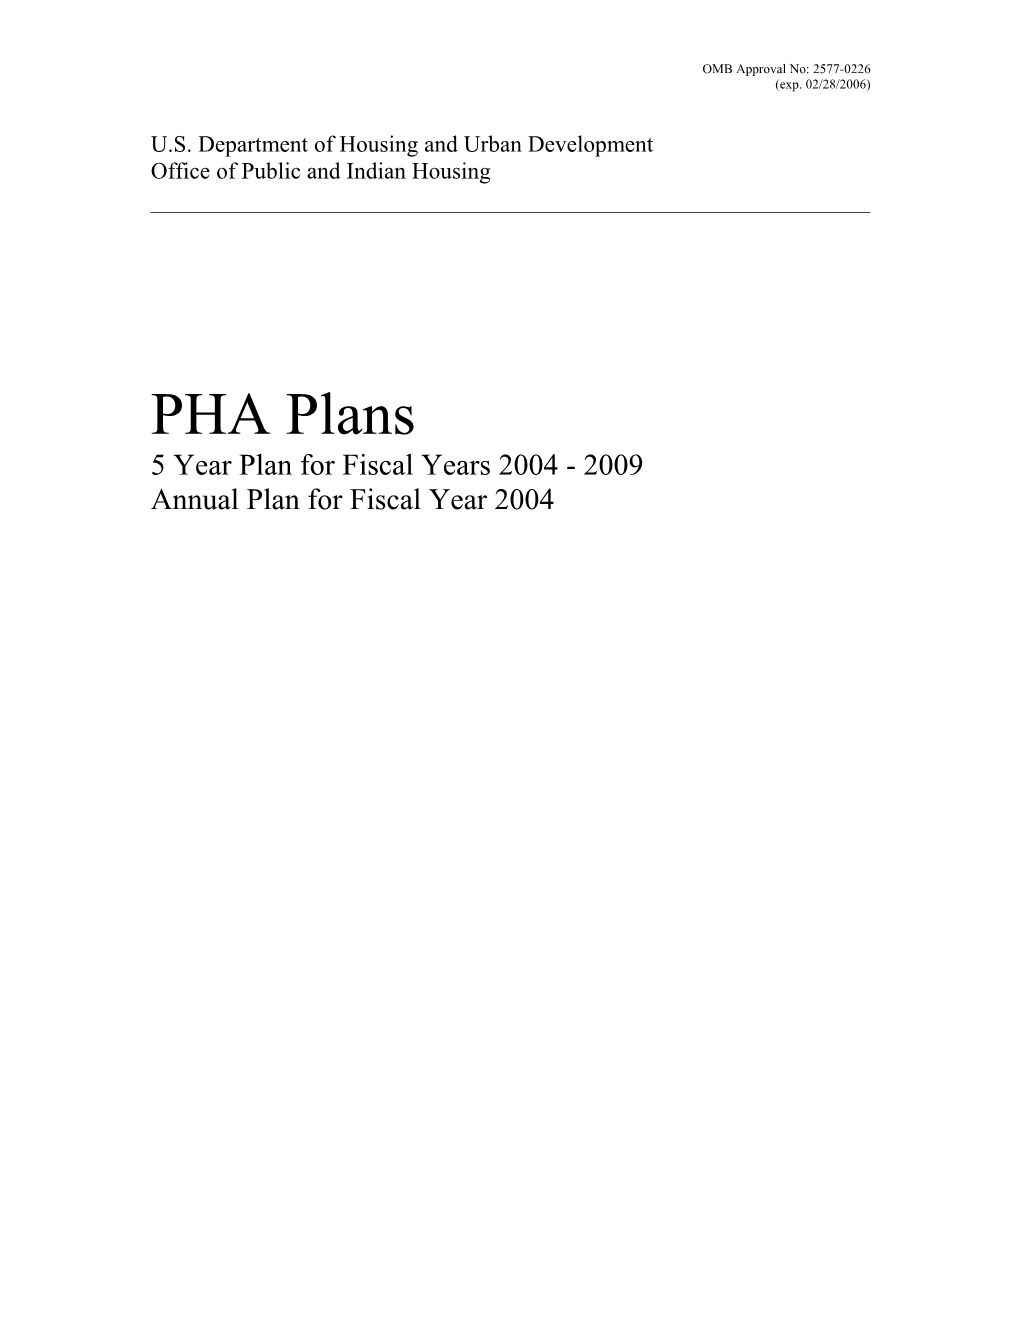 PHA Plan Format